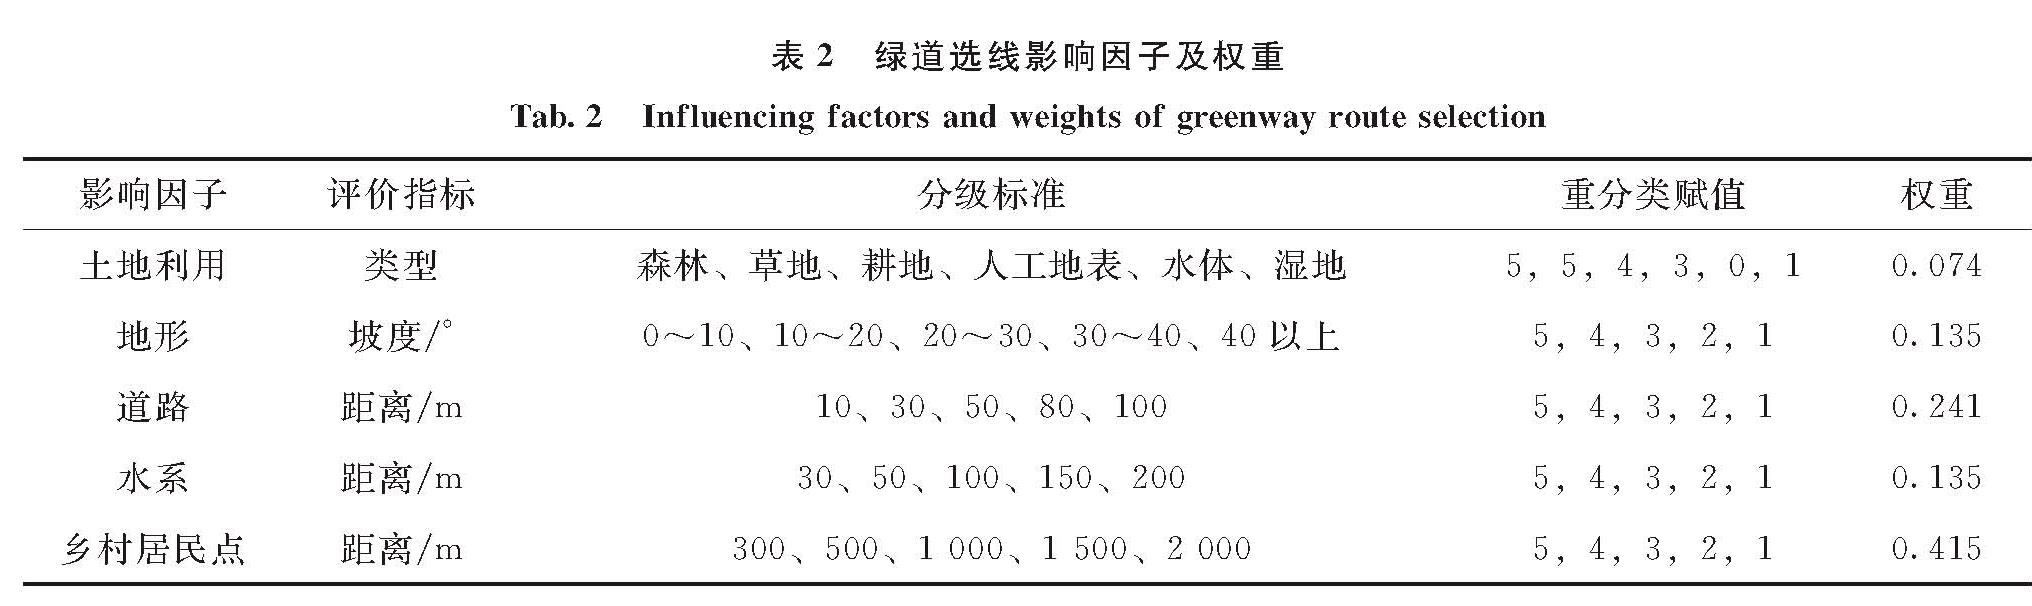 表2 绿道选线影响因子及权重<br/>Tab.2 Influencing factors and weights of greenway route selection